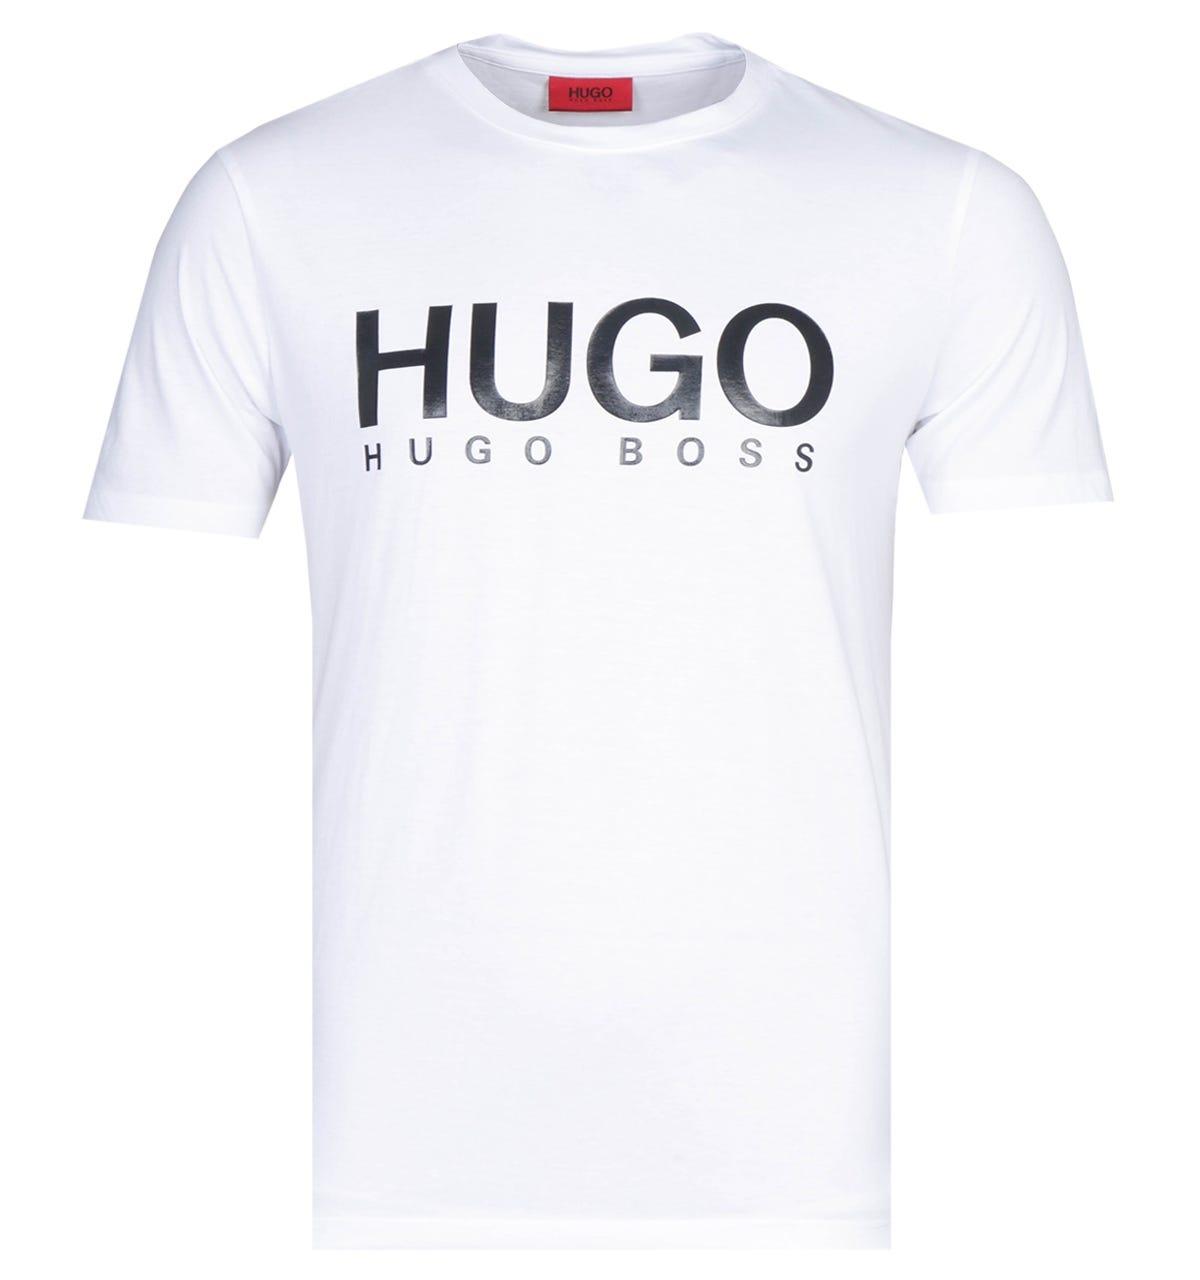 BOSS by Hugo Boss Cotton Hugo Dolive White Logo T-shirt for Men - Lyst